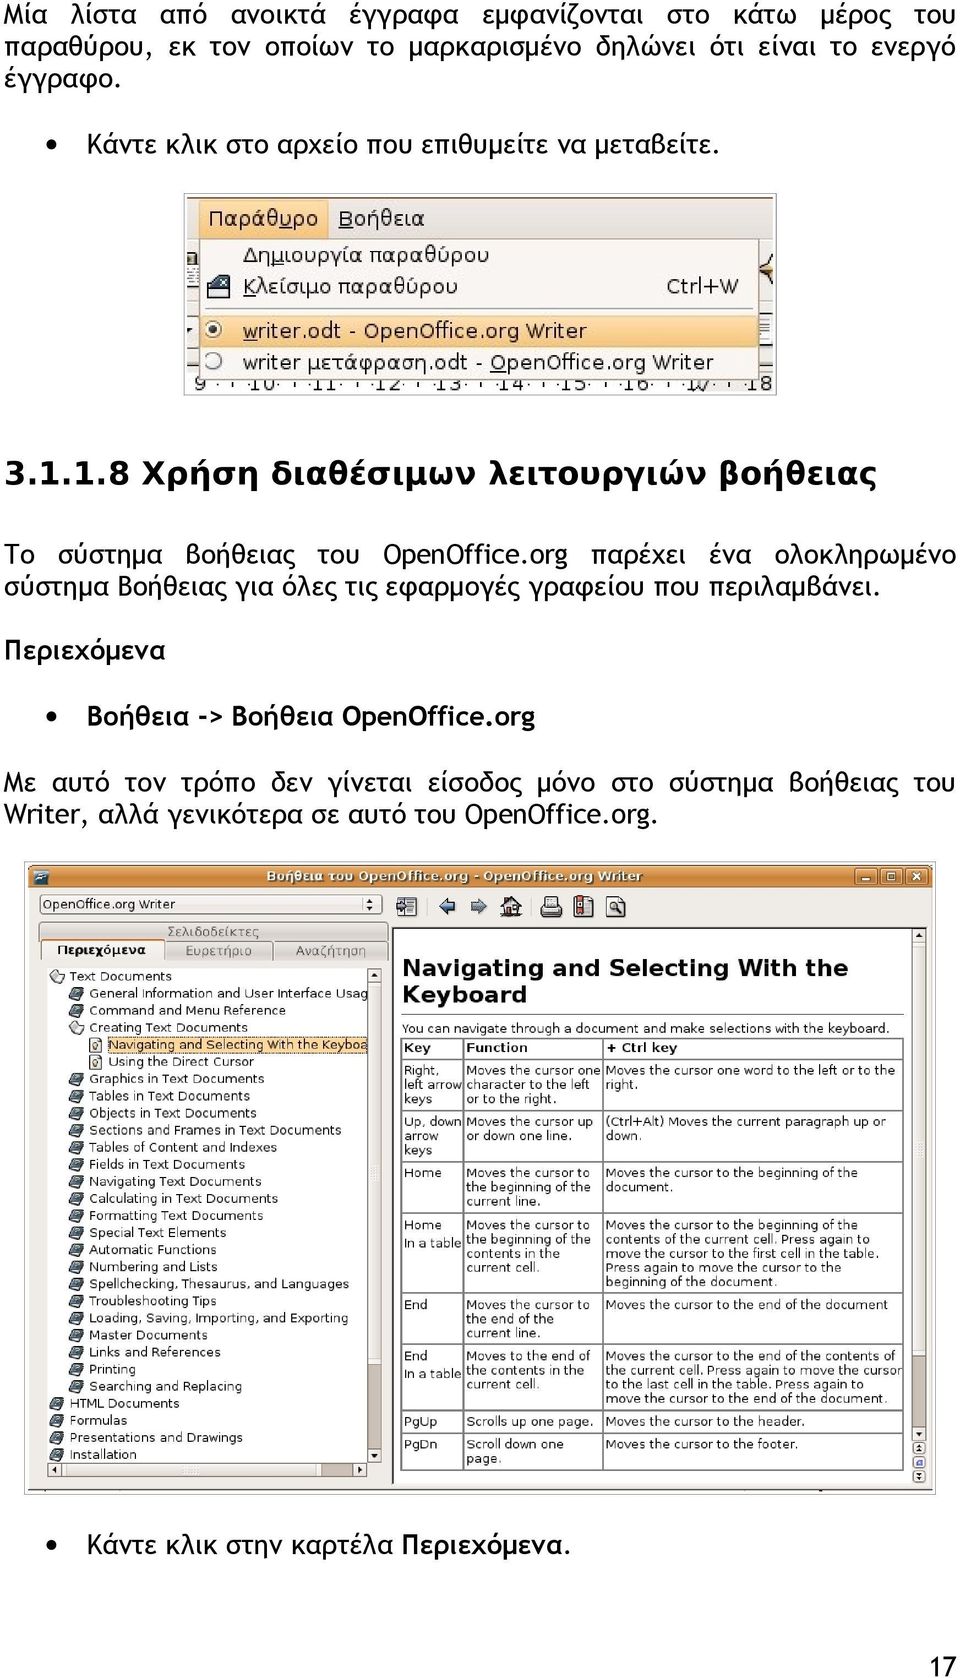 org παρέχει ένα ολοκληρωμένο σύστημα Βοήθειας για όλες τις εφαρμογές γραφείου που περιλαμβάνει. Περιεχόμενα Βοήθεια -> Βοήθεια OpenOffice.